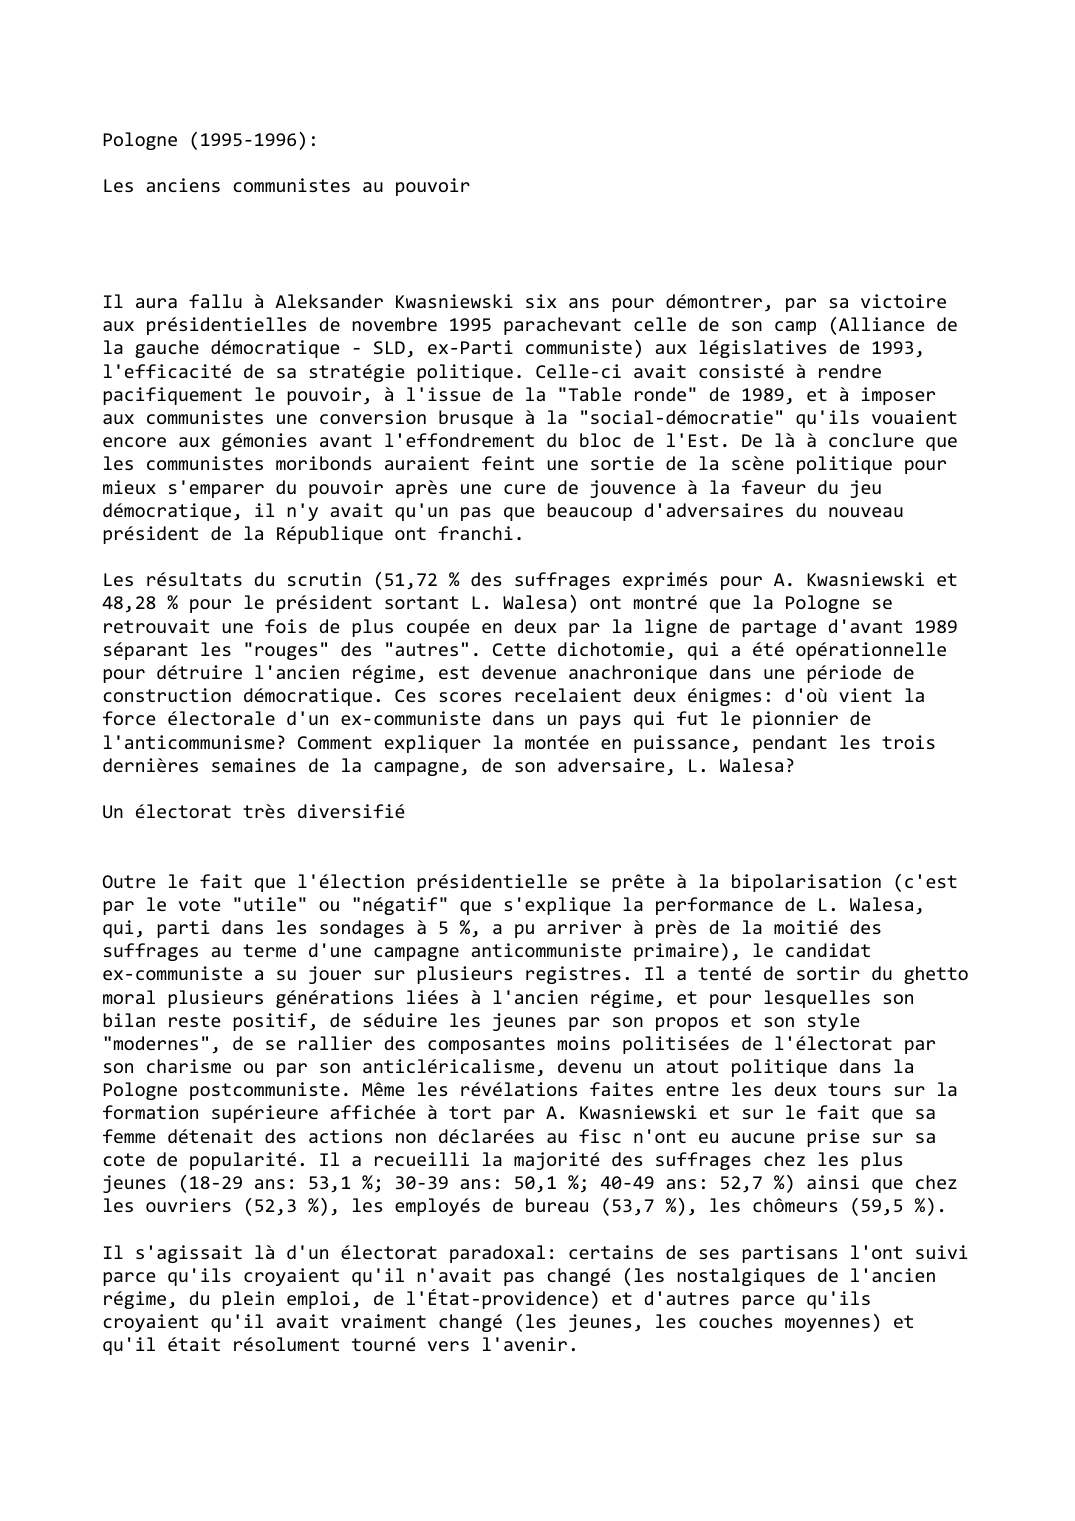 Prévisualisation du document Pologne (1995-1996):

Les anciens communistes au pouvoir